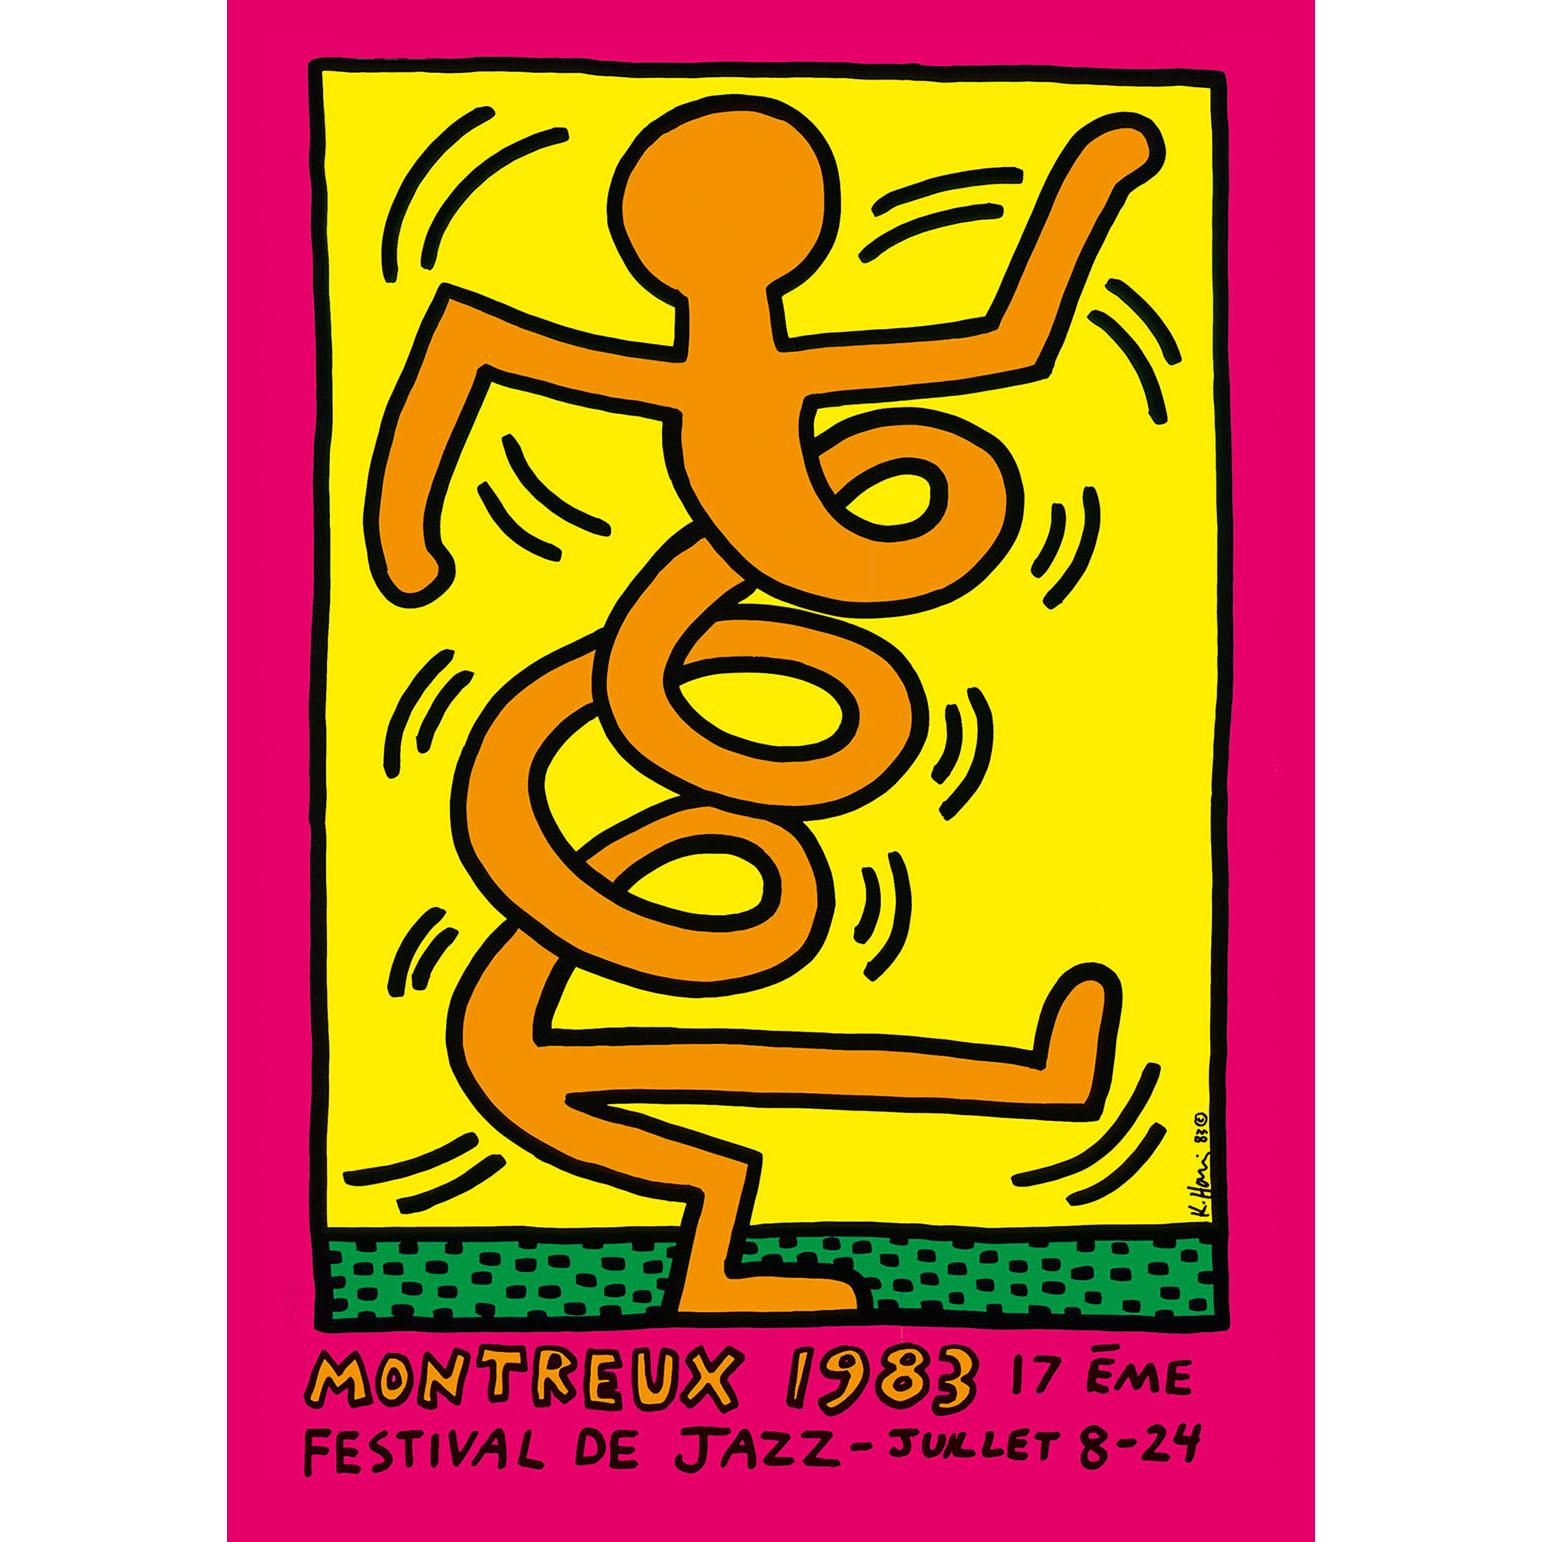 Figurative Print Keith Haring - Festival de jazz de Montreux 1983 (rose)